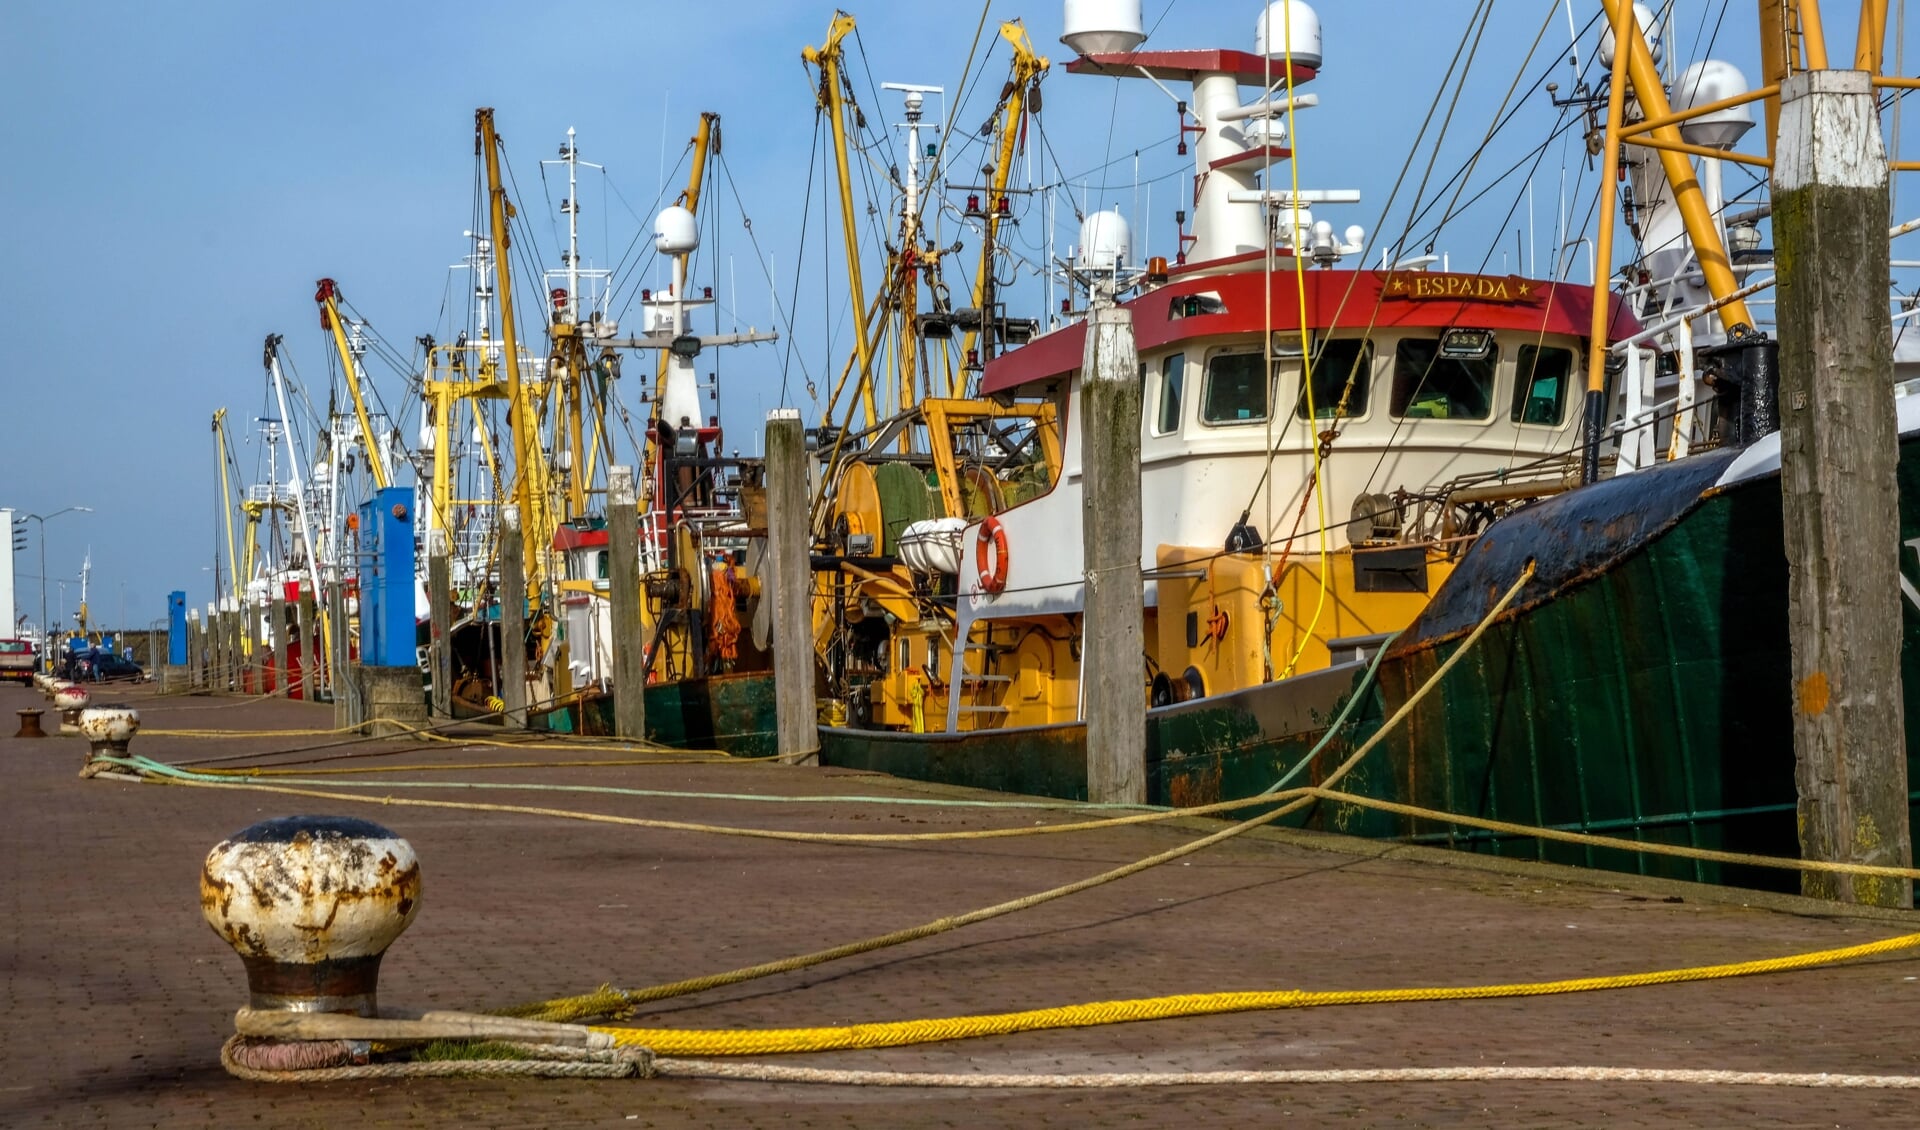 De vissersvloot in Den Oever heeft te maken met hoge kosten door de boomkorsvisserij en hogere brandstofprijzen.